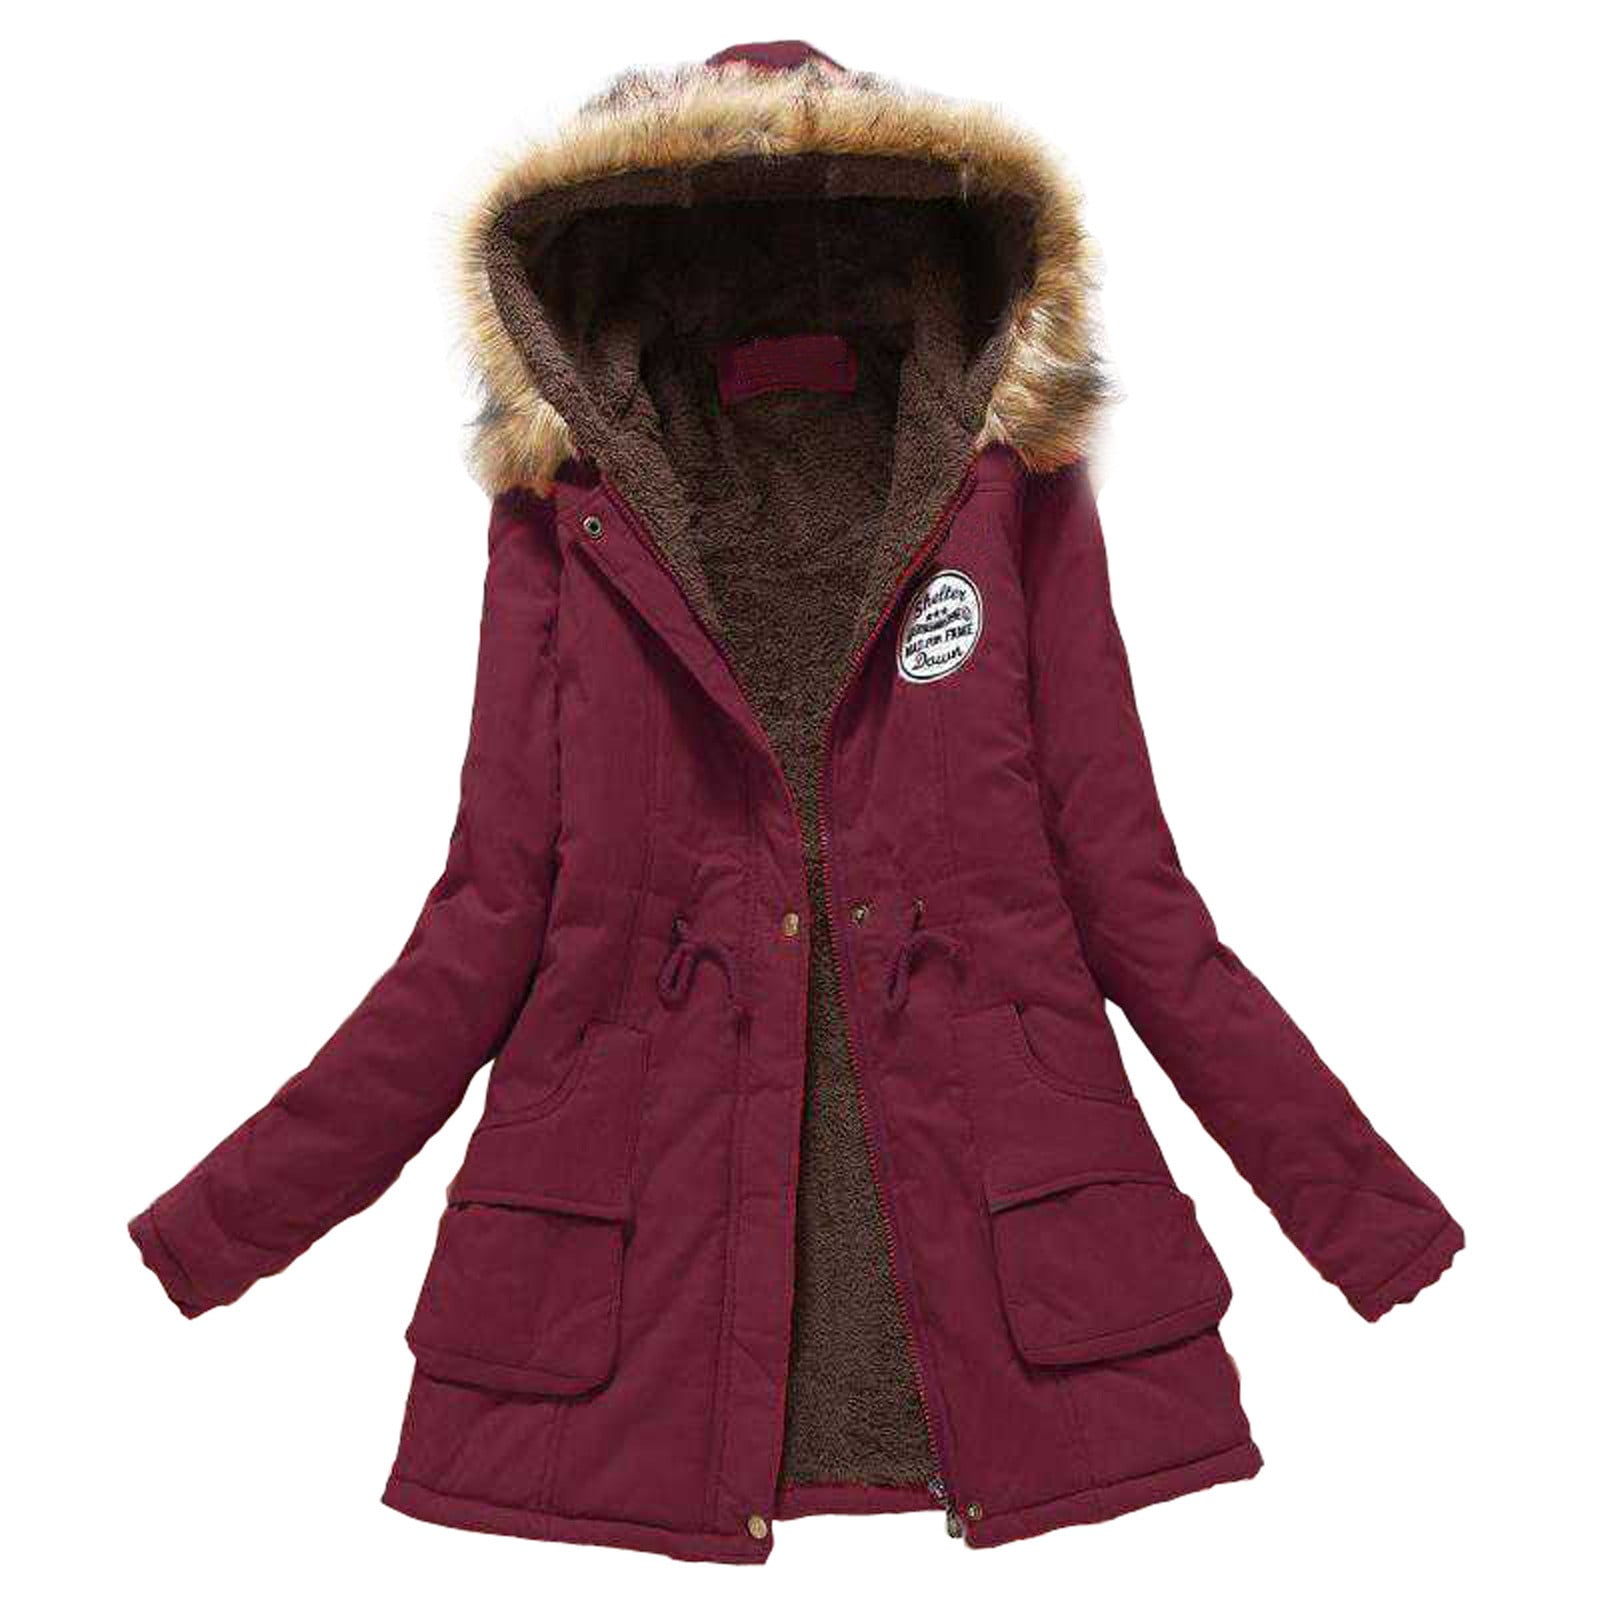 iOPQO Winter Coats for Women Warm Thickened Overcoat Warm Trendy Fleece  Lined Hooded Snow Coat Fleece Jacket,Jackets for Women,Fall Outfits Wine  XXL 